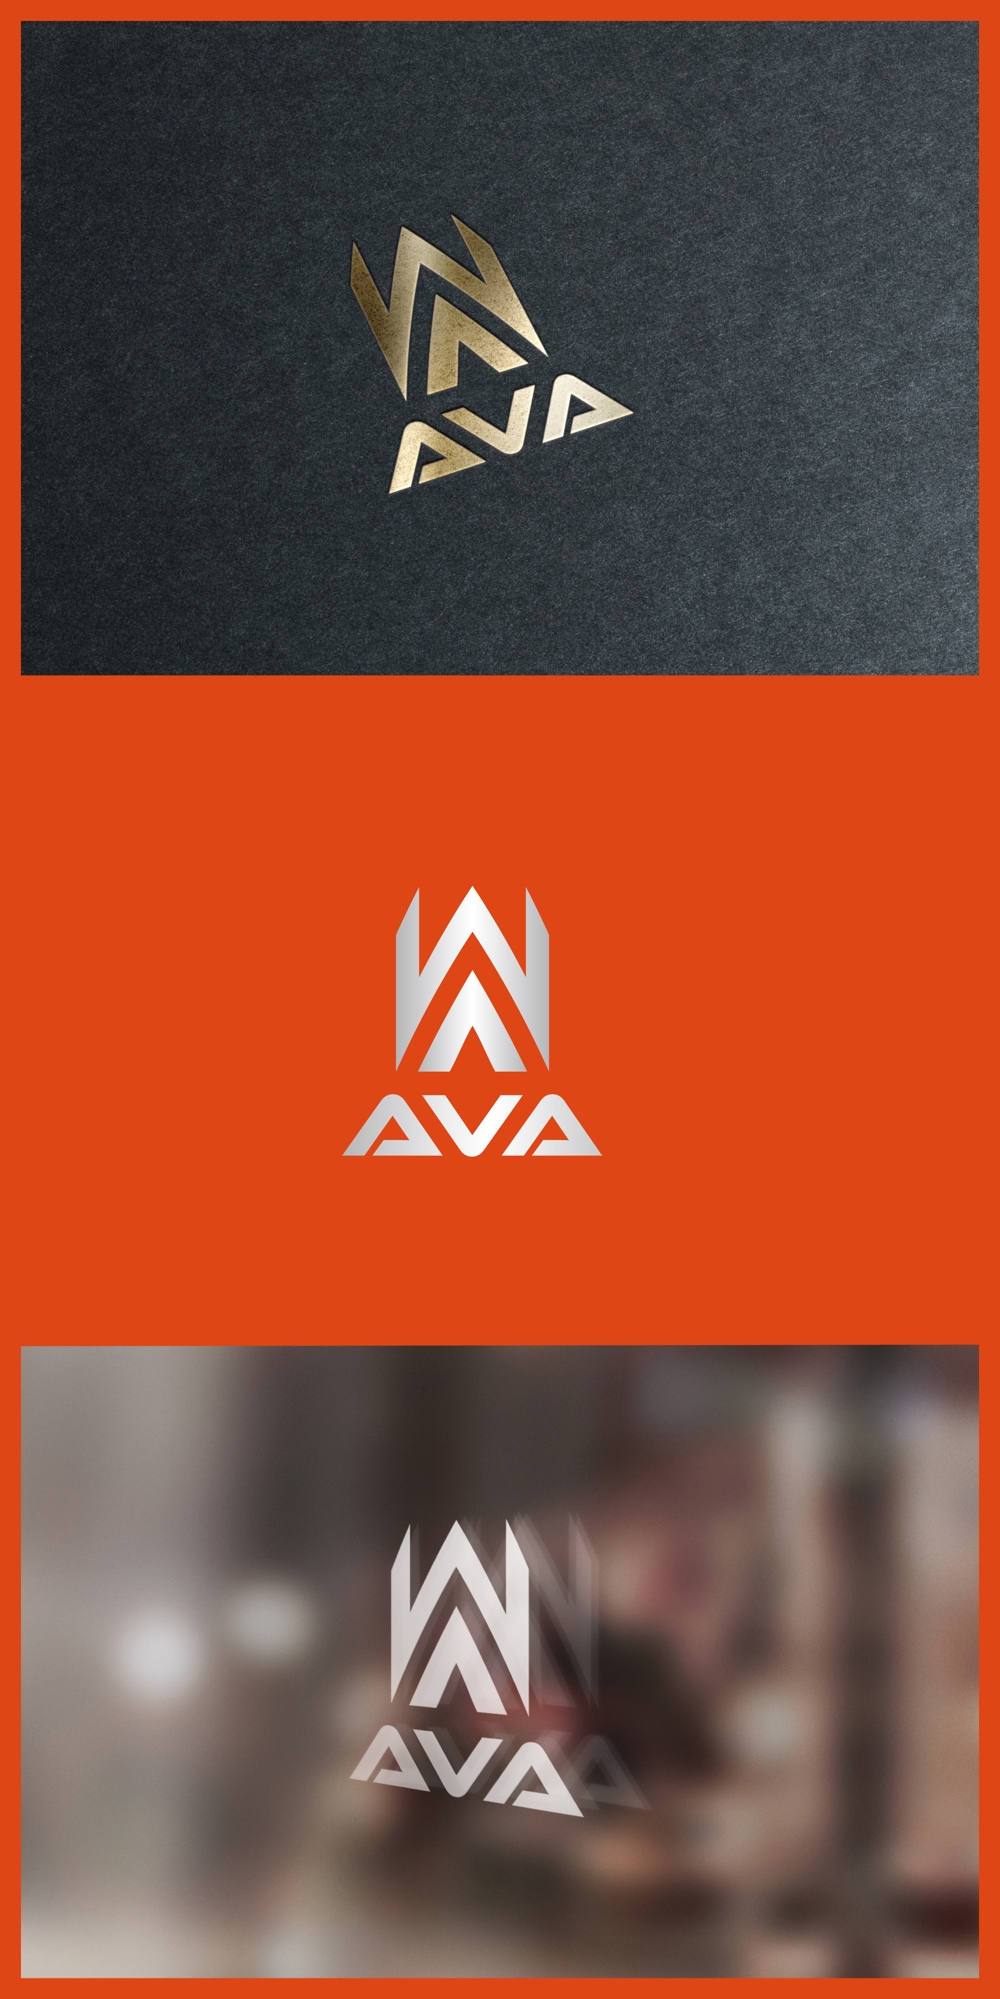 AVA_logo01_01.jpg